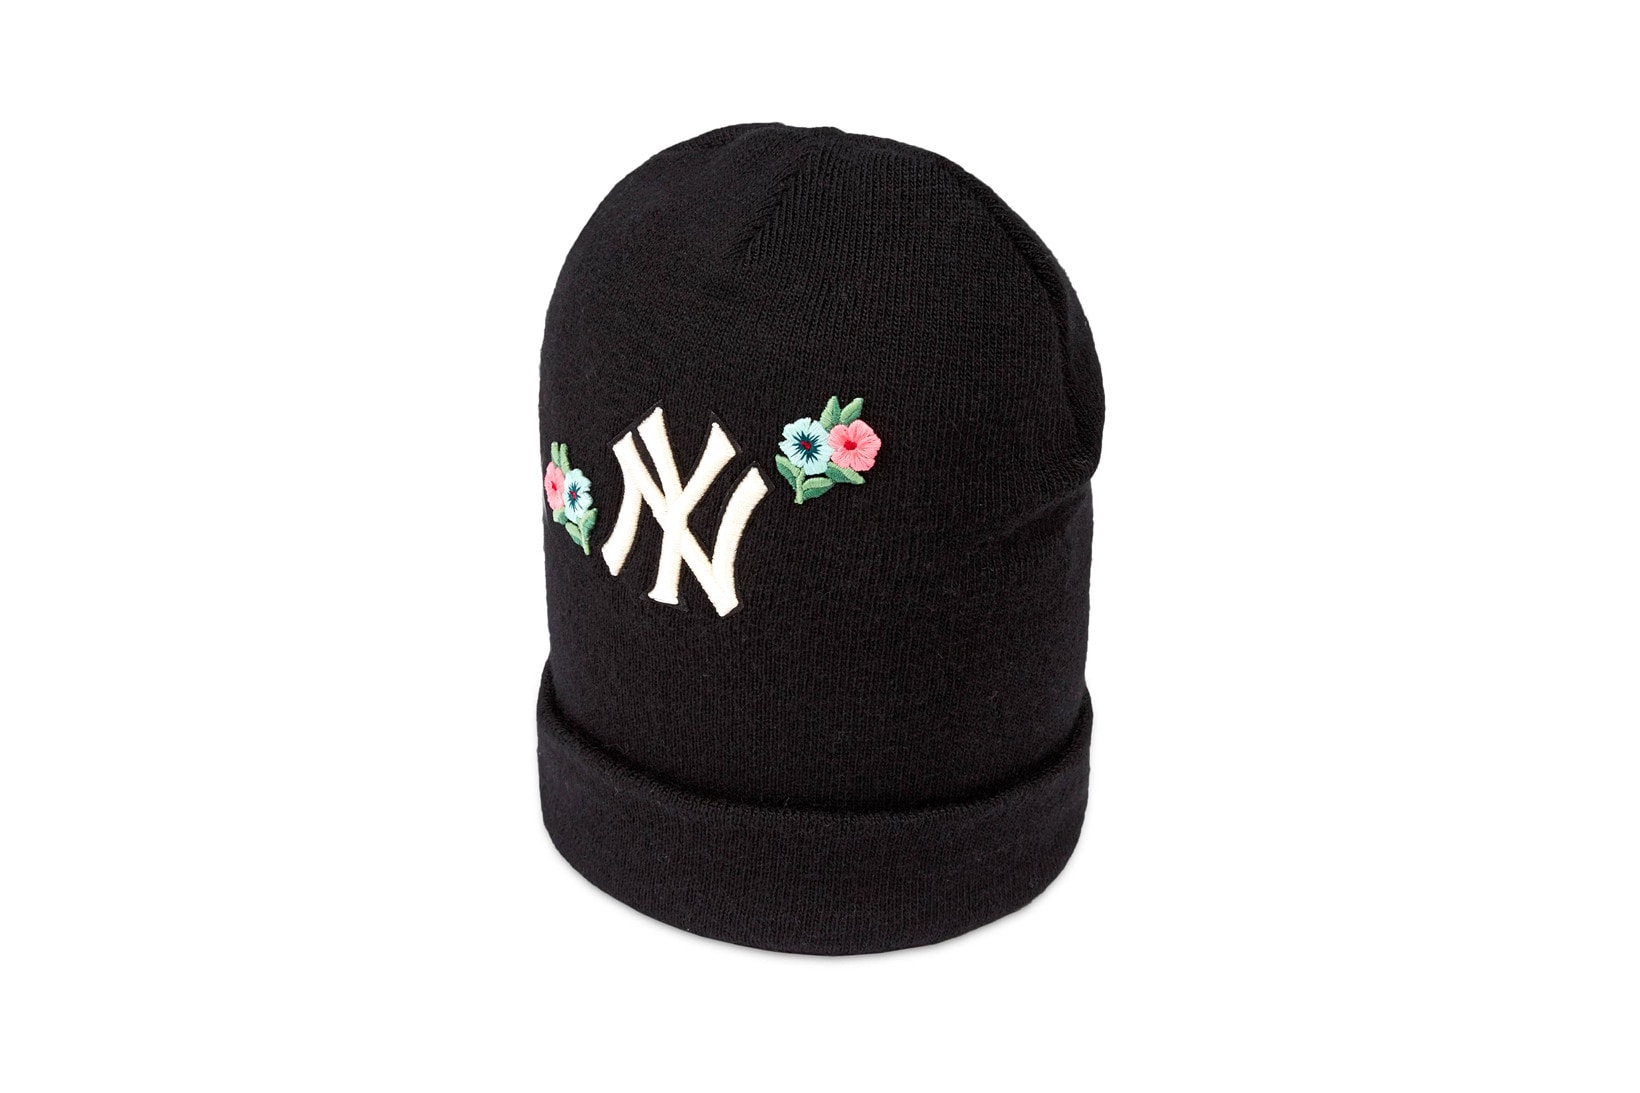 Gucci x New York Yankees 聯名別注系列上架